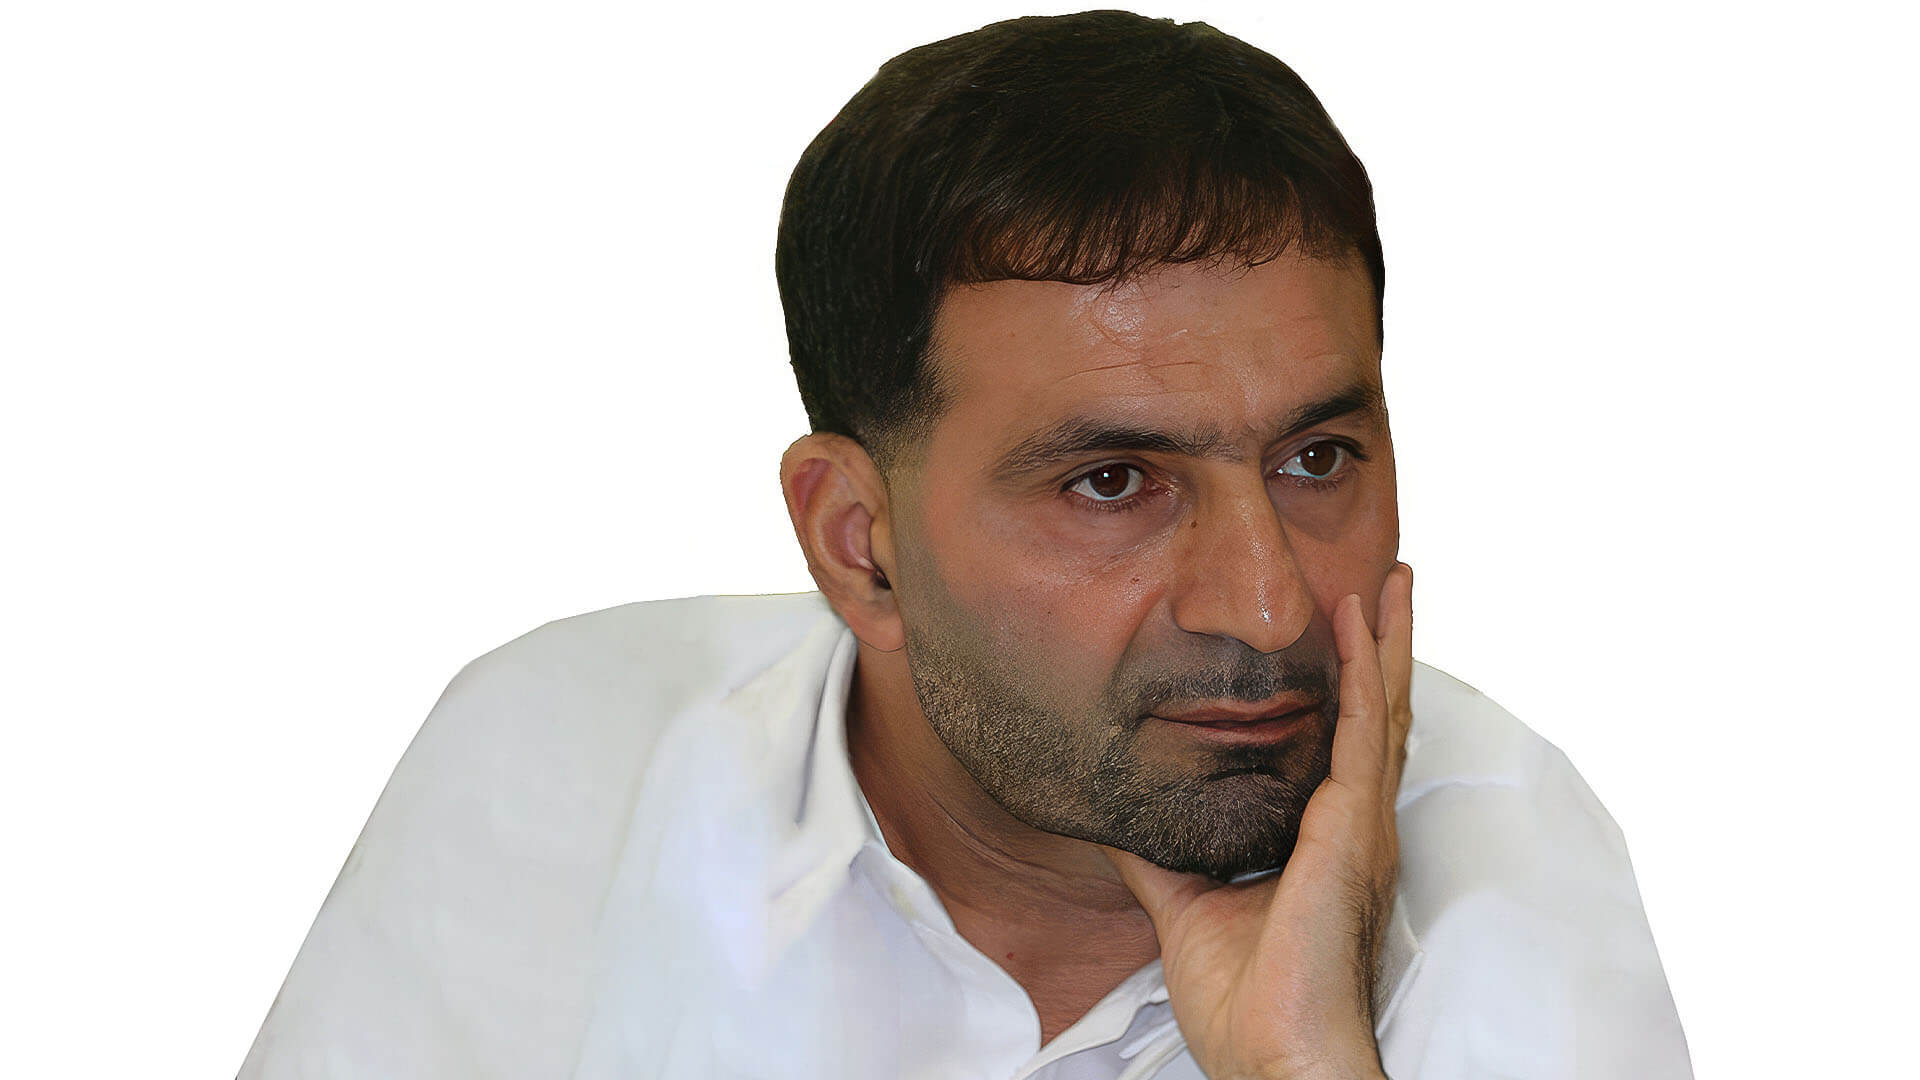 شهید حسن طهرانی مقدم - عکس شهید حسن طهرانی مقدم با کیفیت بالا فول اچ دی 1920x1080